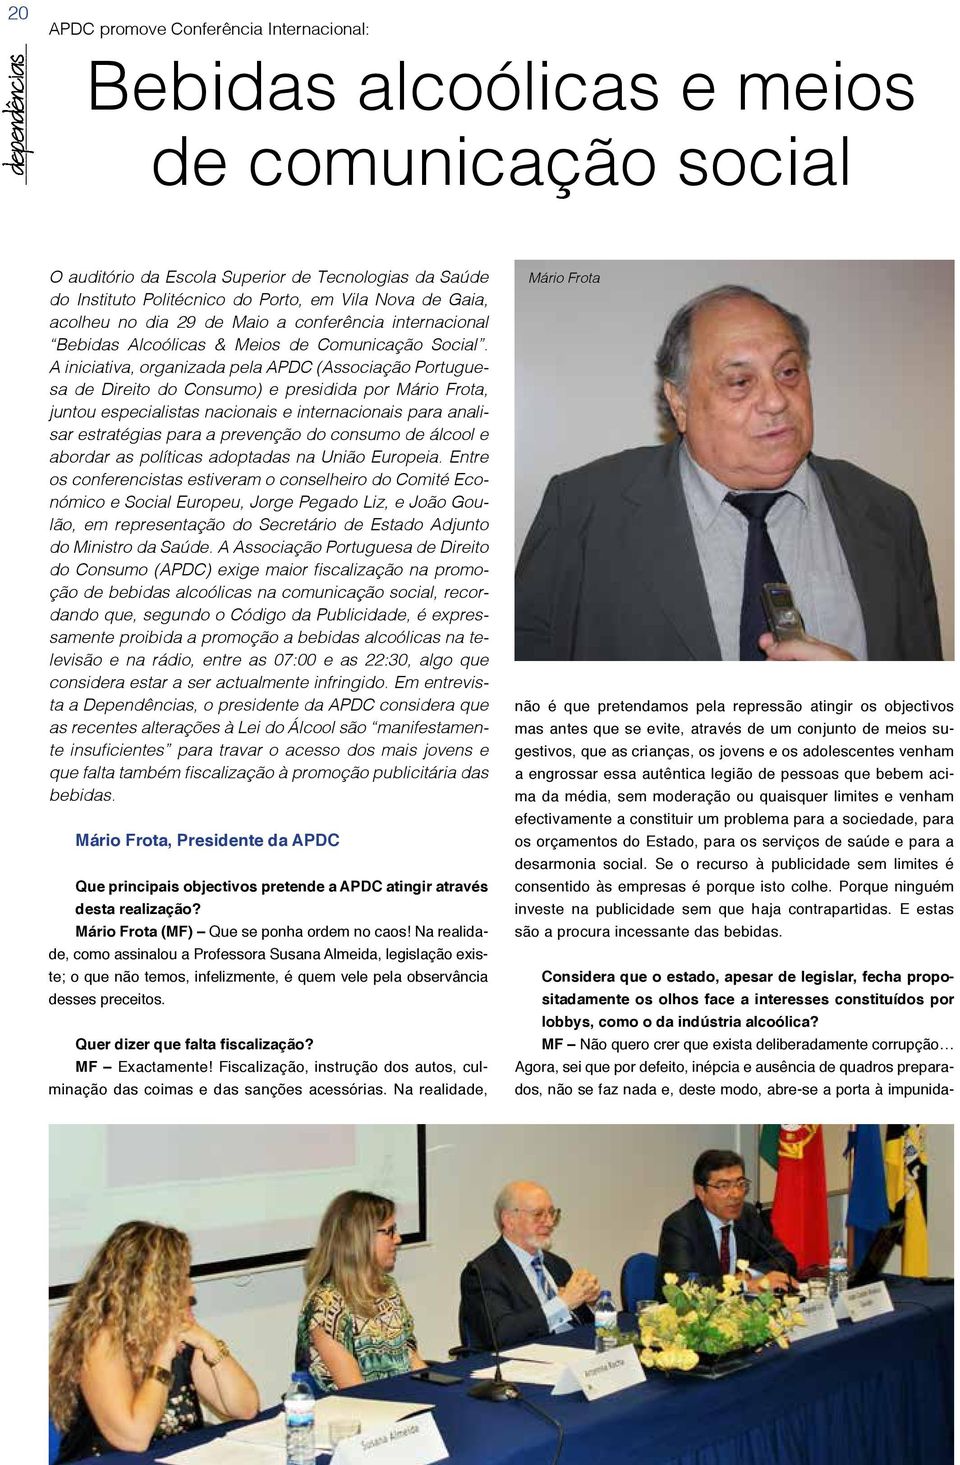 A iniciativa, organizada pela APDC (Associação Portuguesa de Direito do Consumo) e presidida por Mário Frota, juntou especialistas nacionais e internacionais para analisar estratégias para a